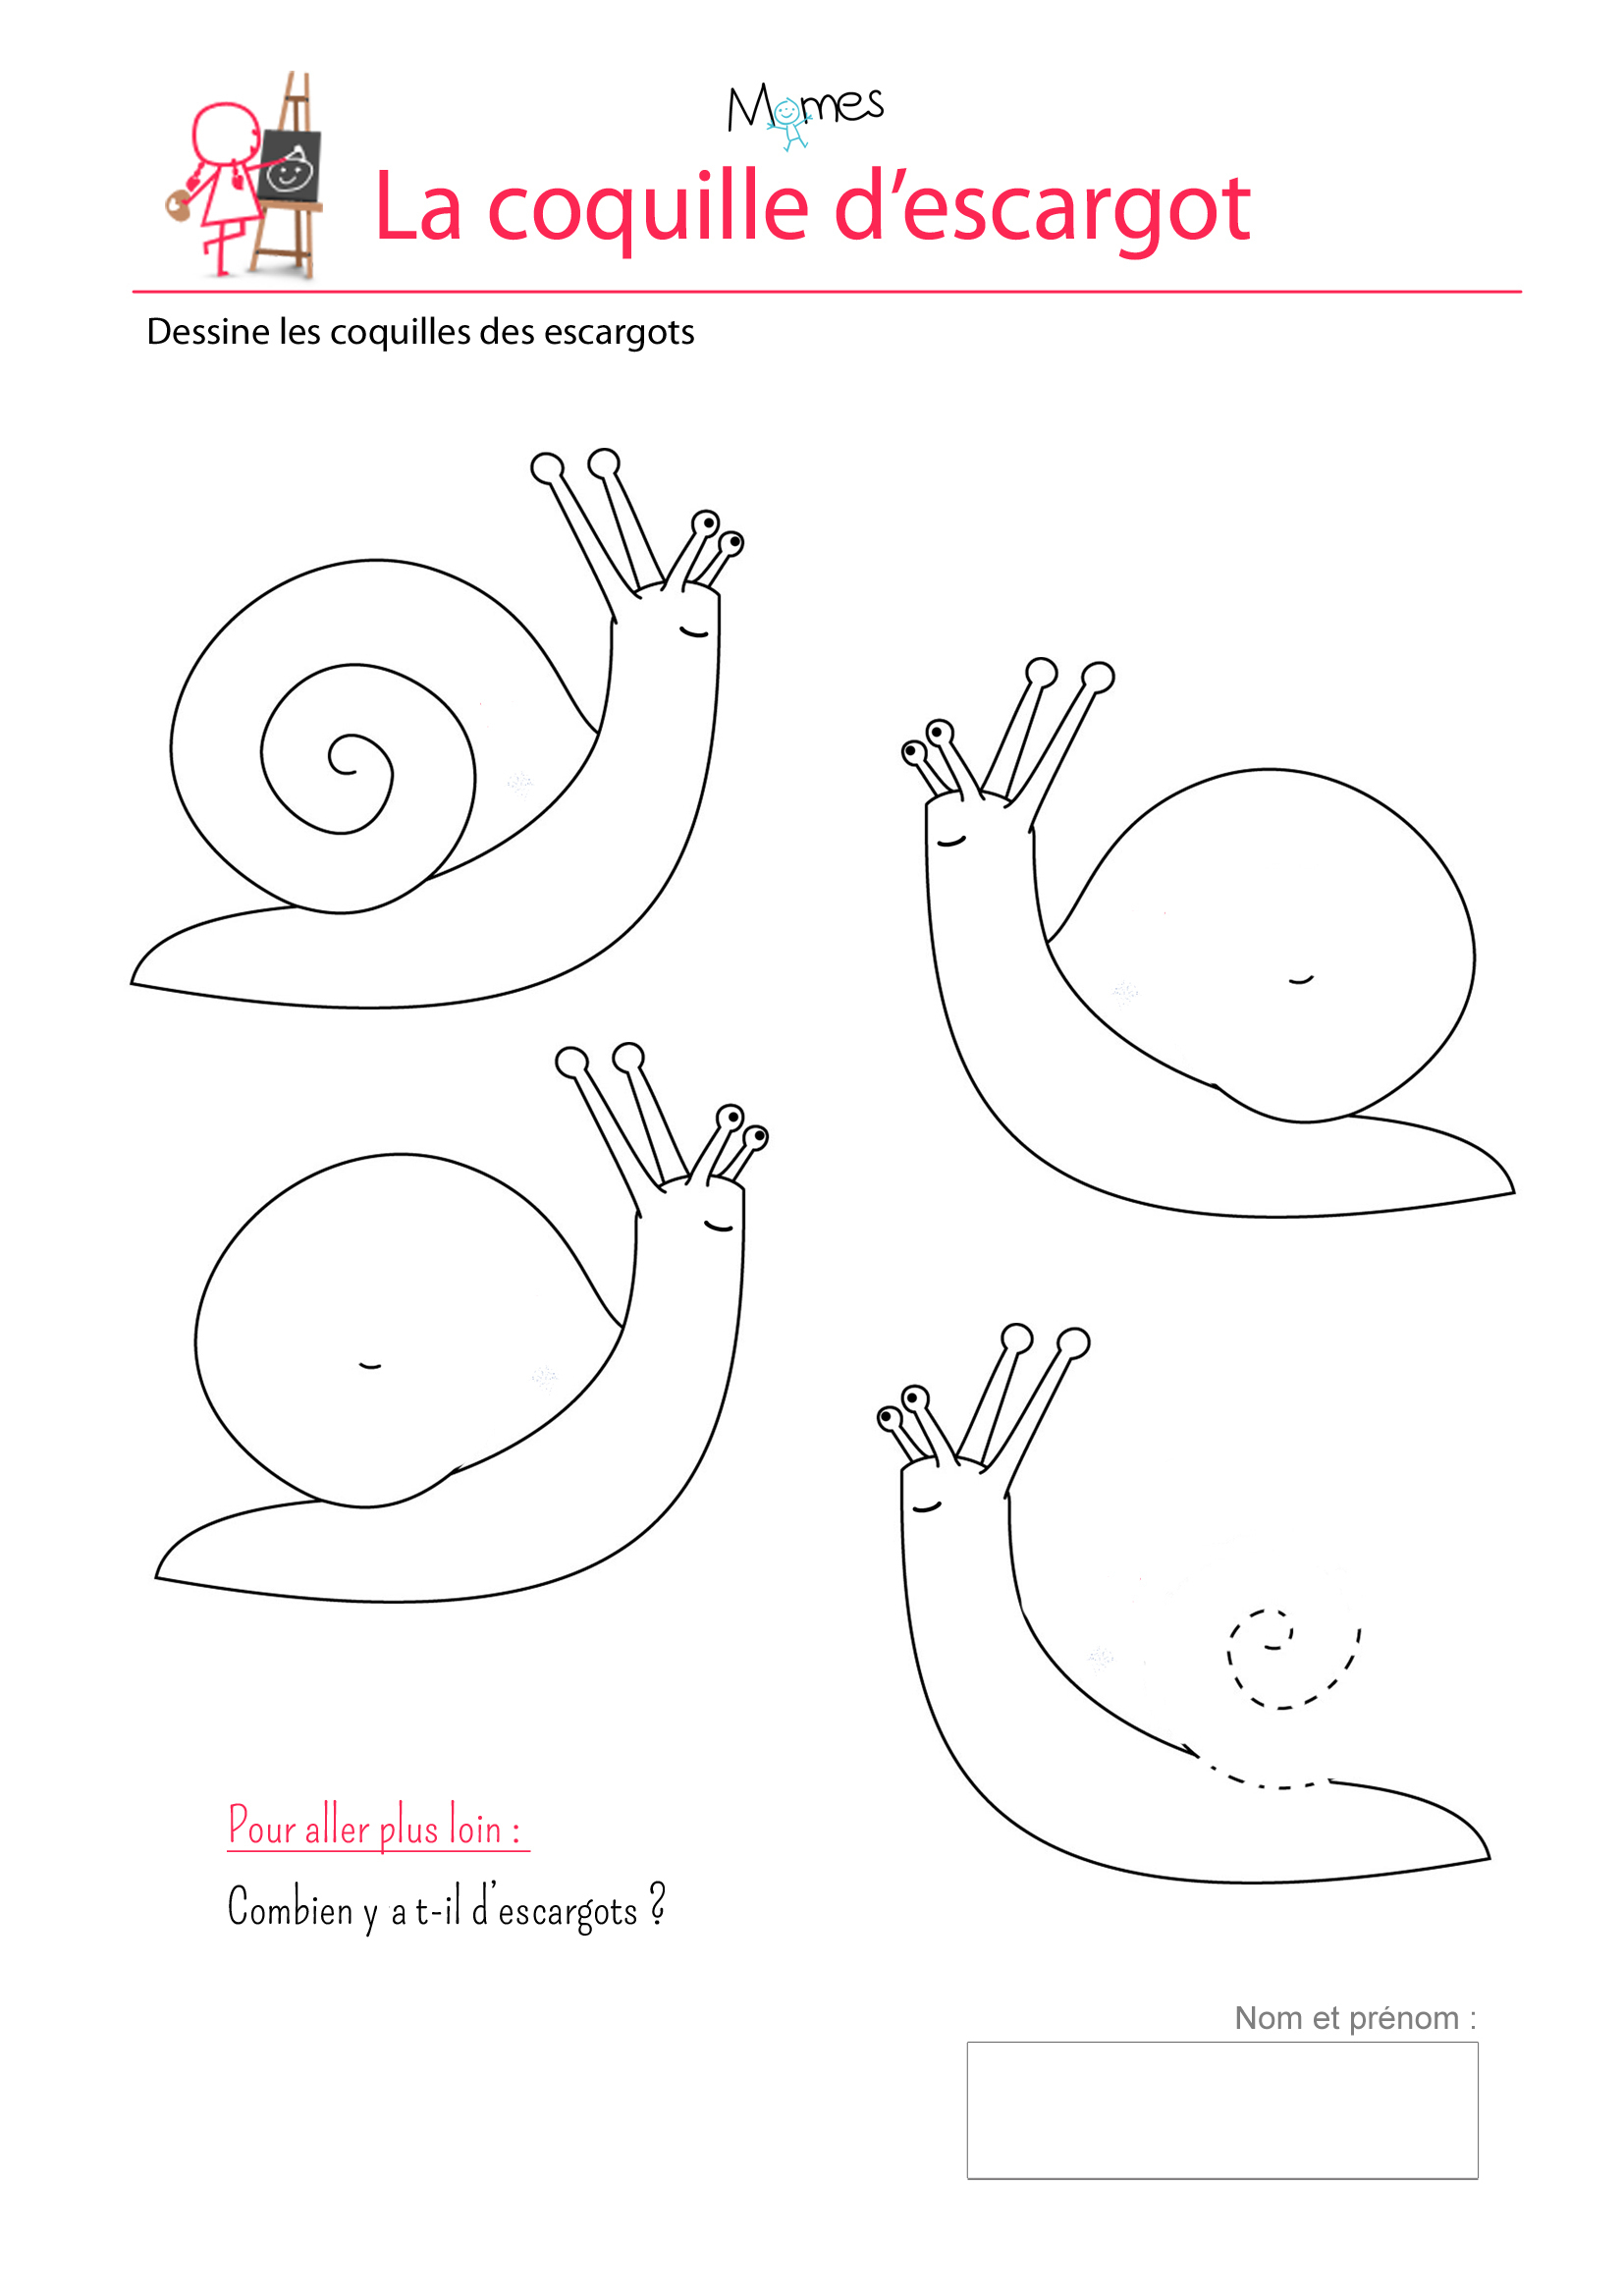 Les Coquilles D'escargots - Exercice Sur Les Spirales destiné Exercice De Maternelle A Imprimer Gratuit